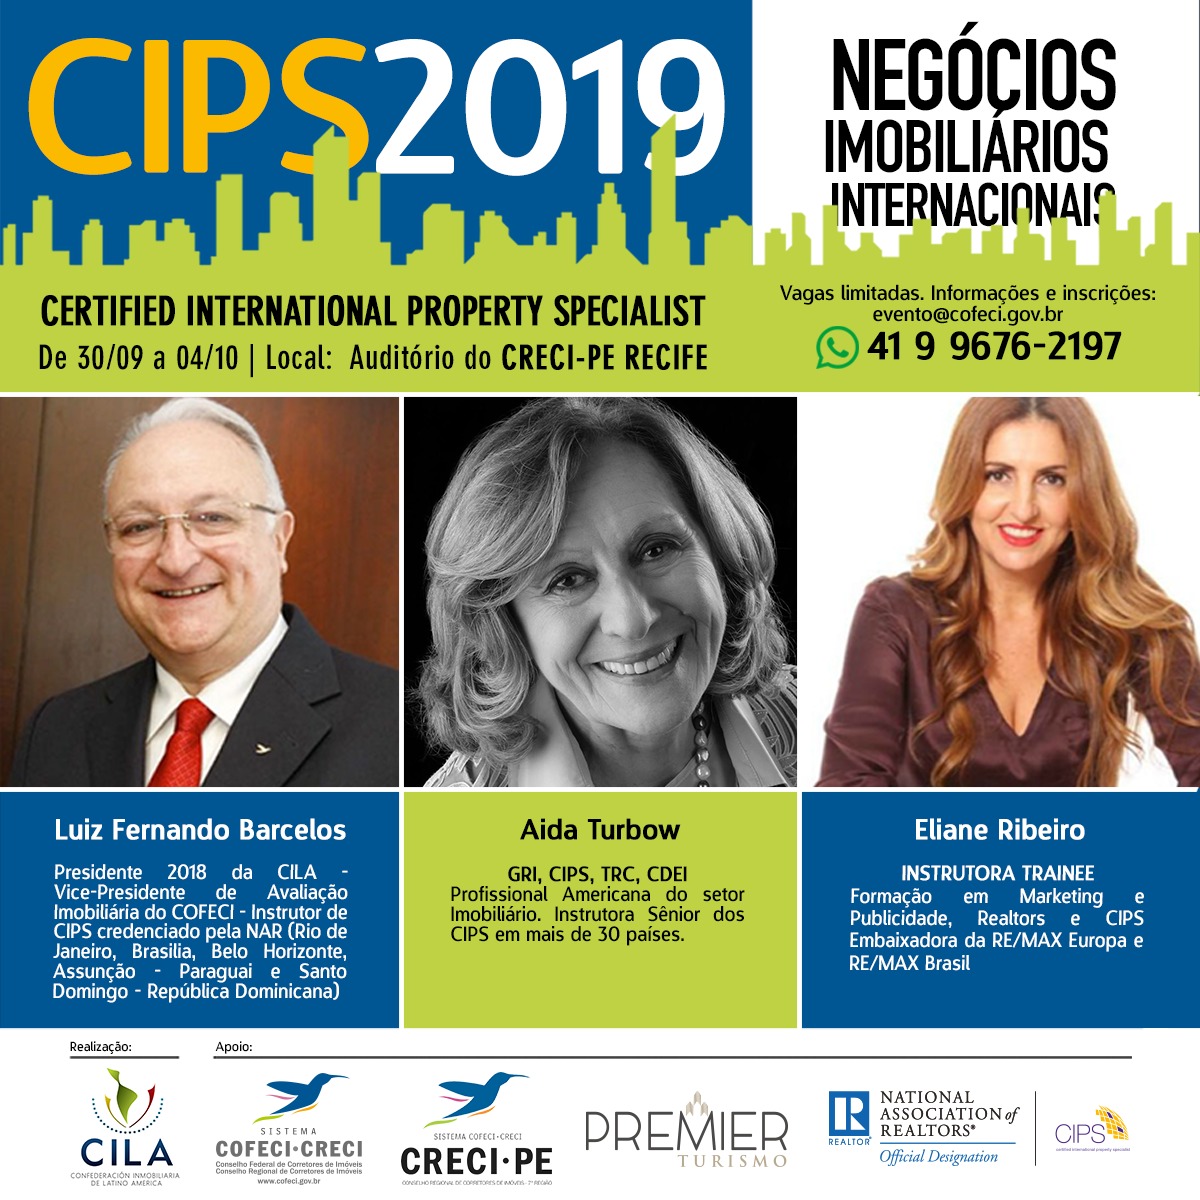 CIPS 2019 - Negócios Imobiliários Internacionais